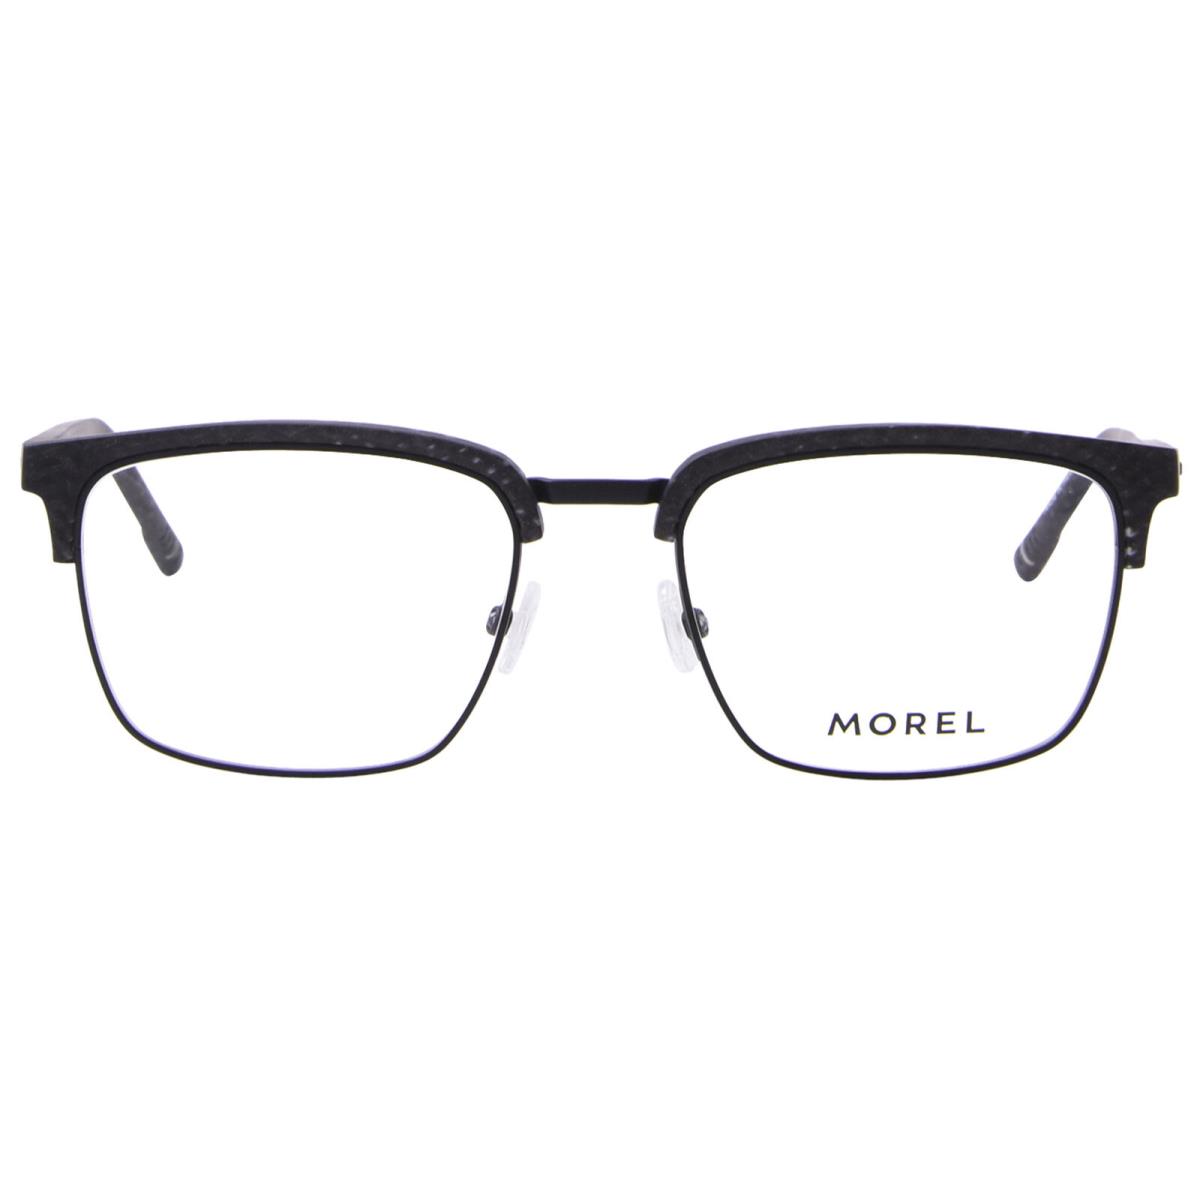 Versace Morel Tinset-4 ND10 Eyeglasses Men`s Black Full Rim Rectangle Shape 55mm